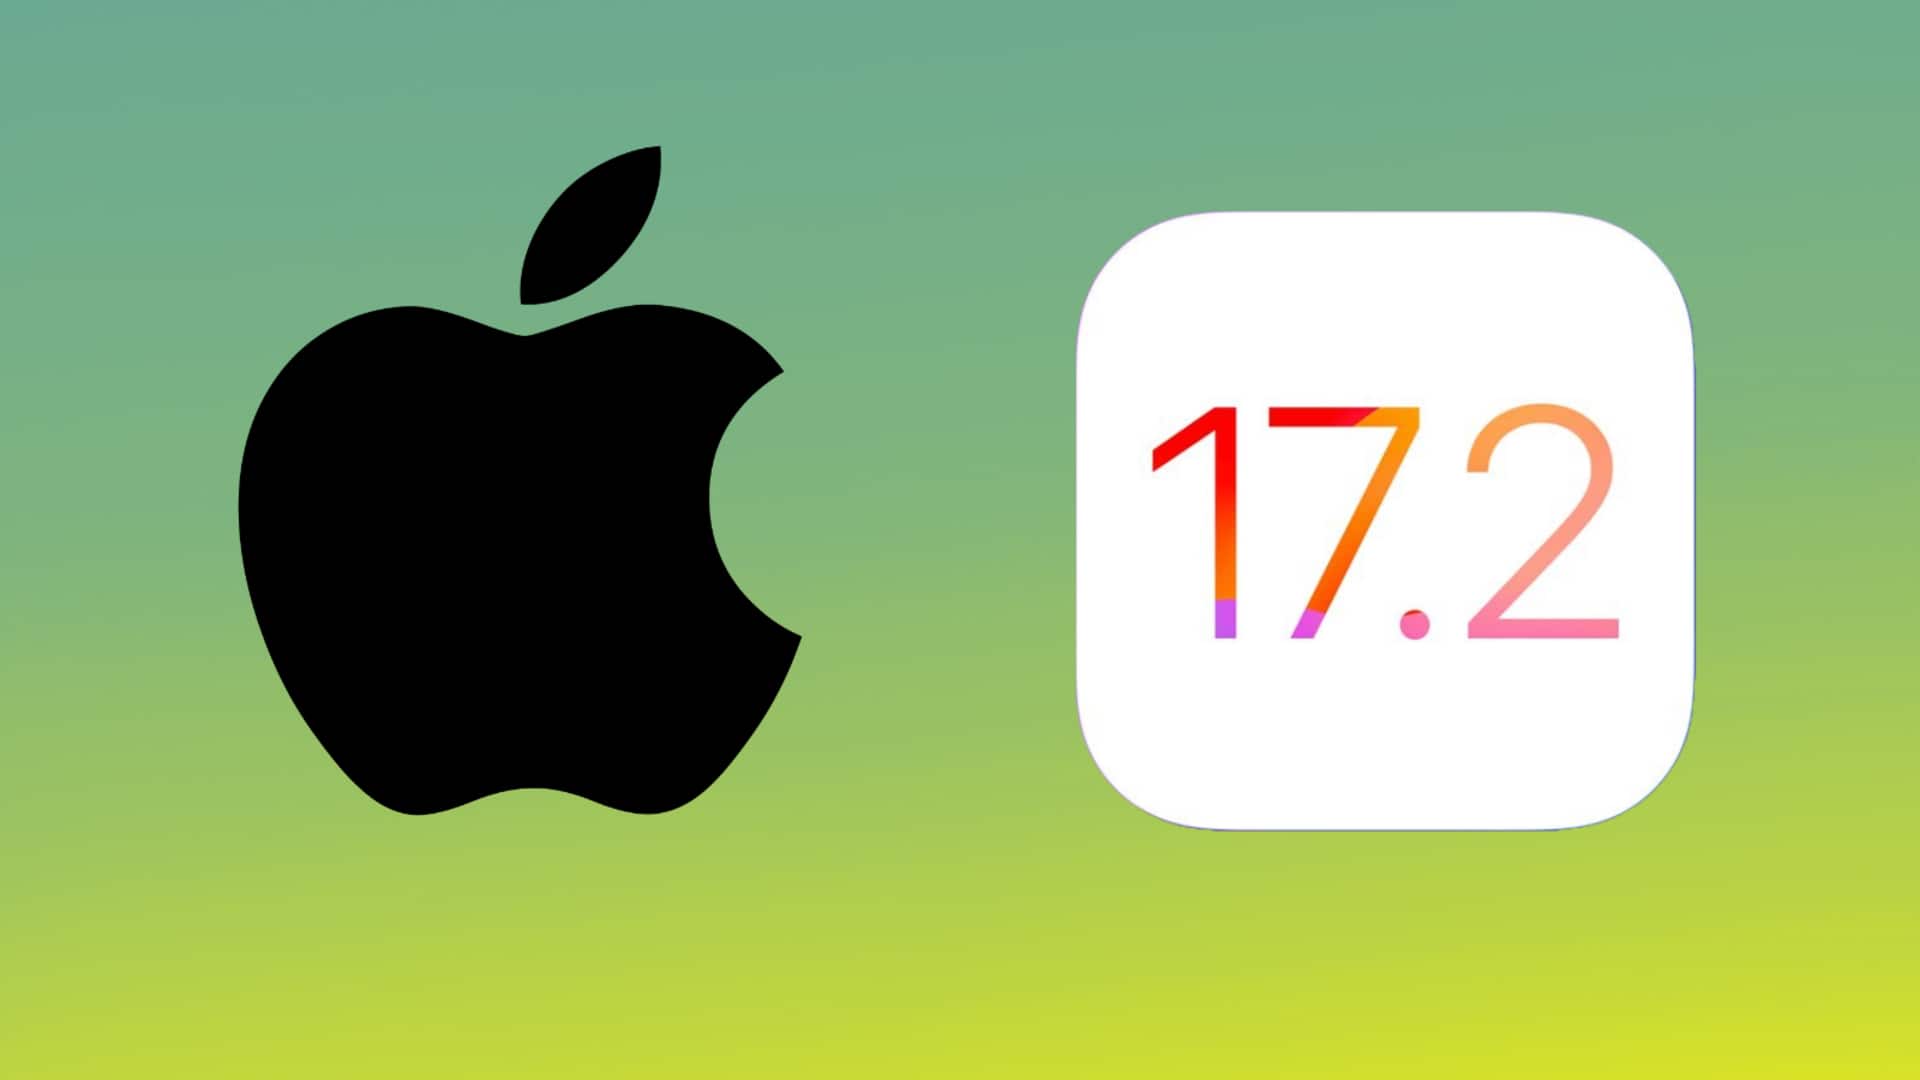 ऐपल ने जारी की iOS 17.2 अपडेट, यूजर्स को मिले जर्नल ऐपल समेत ये फीचर्स